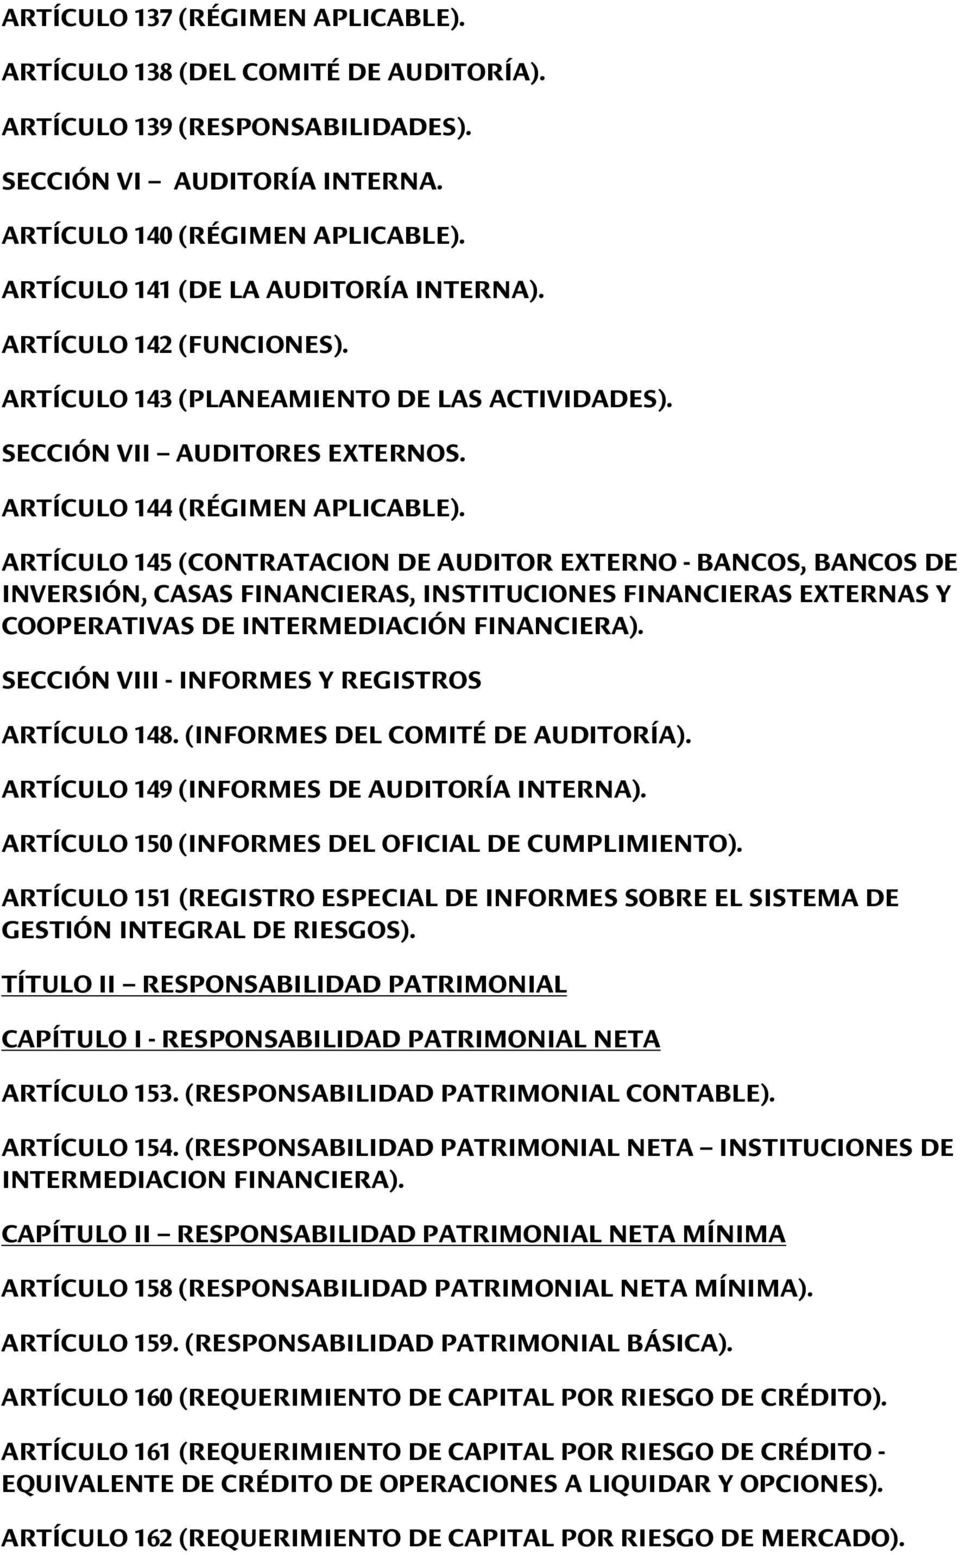 ARTÍCULO 145 (CONTRATACION DE AUDITOR EXTERNO - BANCOS, BANCOS DE INVERSIÓN, CASAS FINANCIERAS, INSTITUCIONES FINANCIERAS EXTERNAS Y COOPERATIVAS DE INTERMEDIACIÓN FINANCIERA).